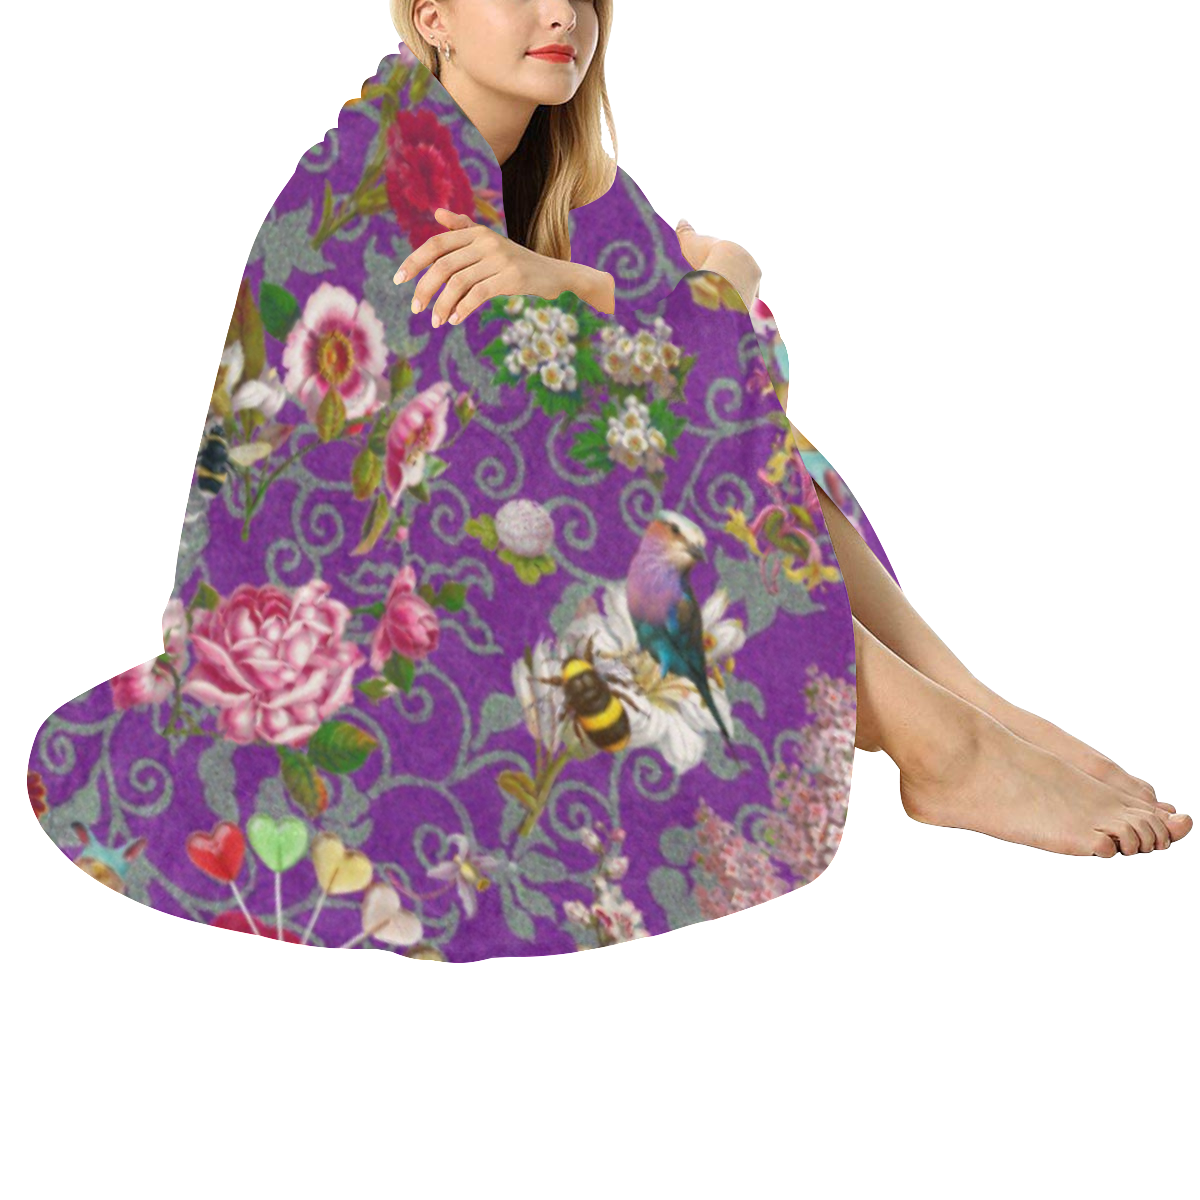 Spring Bank Holiday Circular Ultra-Soft Micro Fleece Blanket 60"